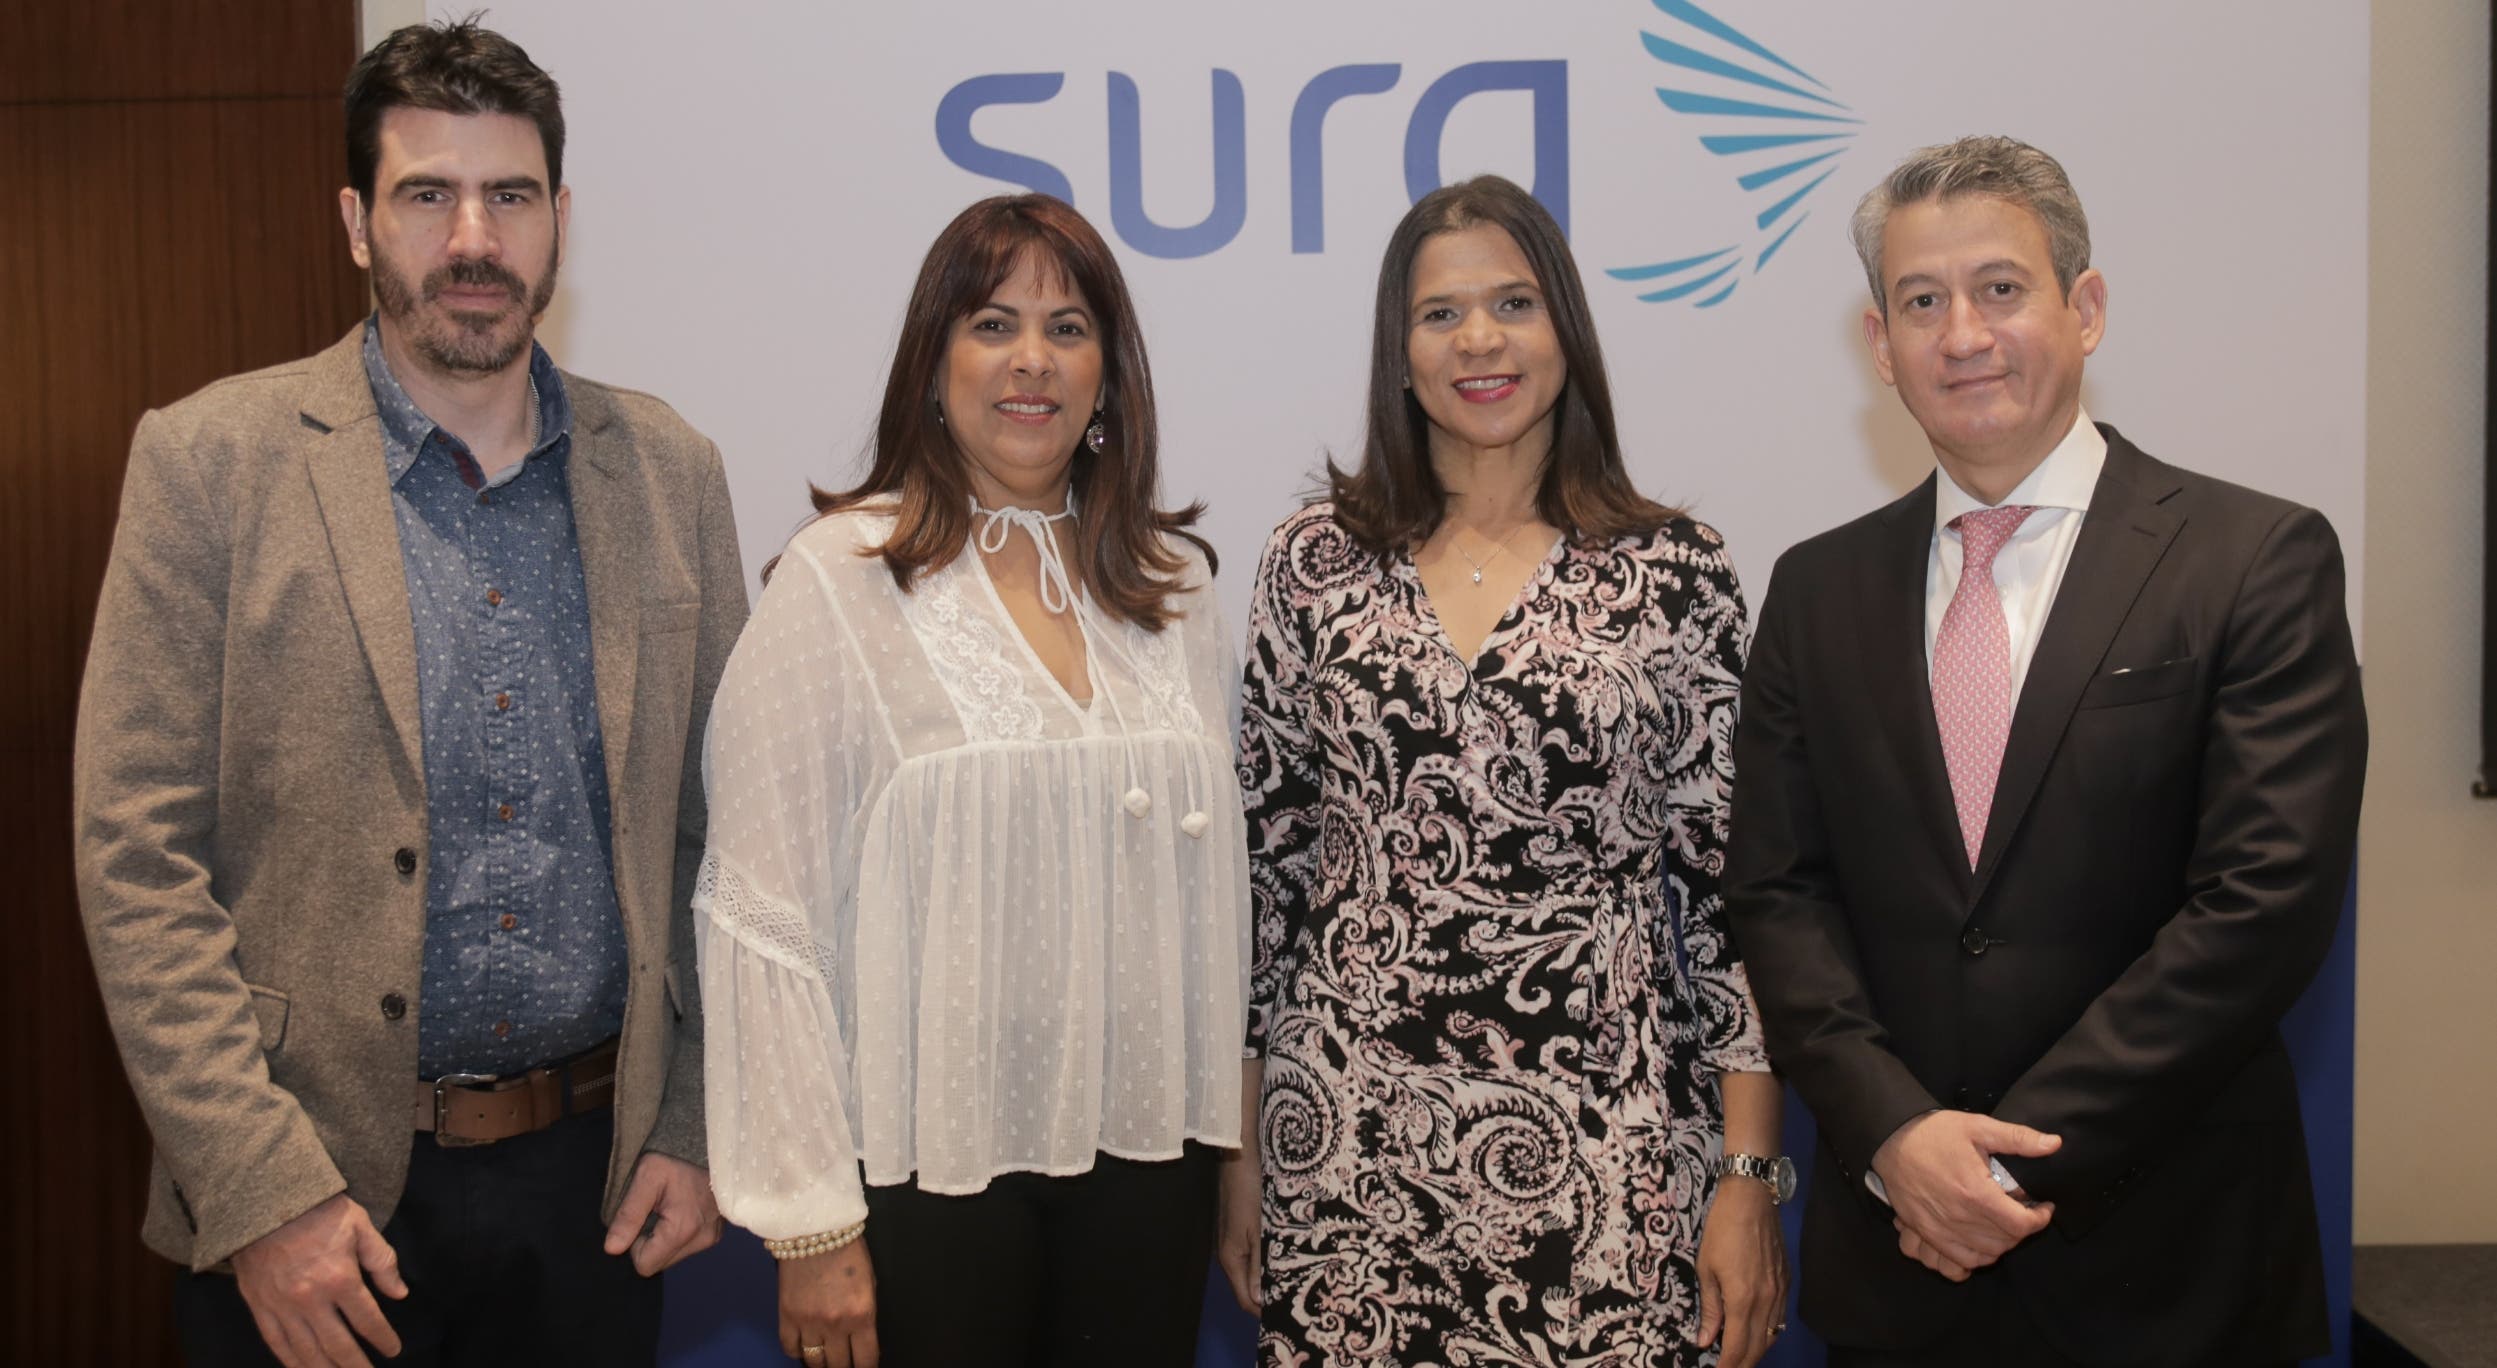 Seguros SURA ofrece una conferencia sobre tecnología